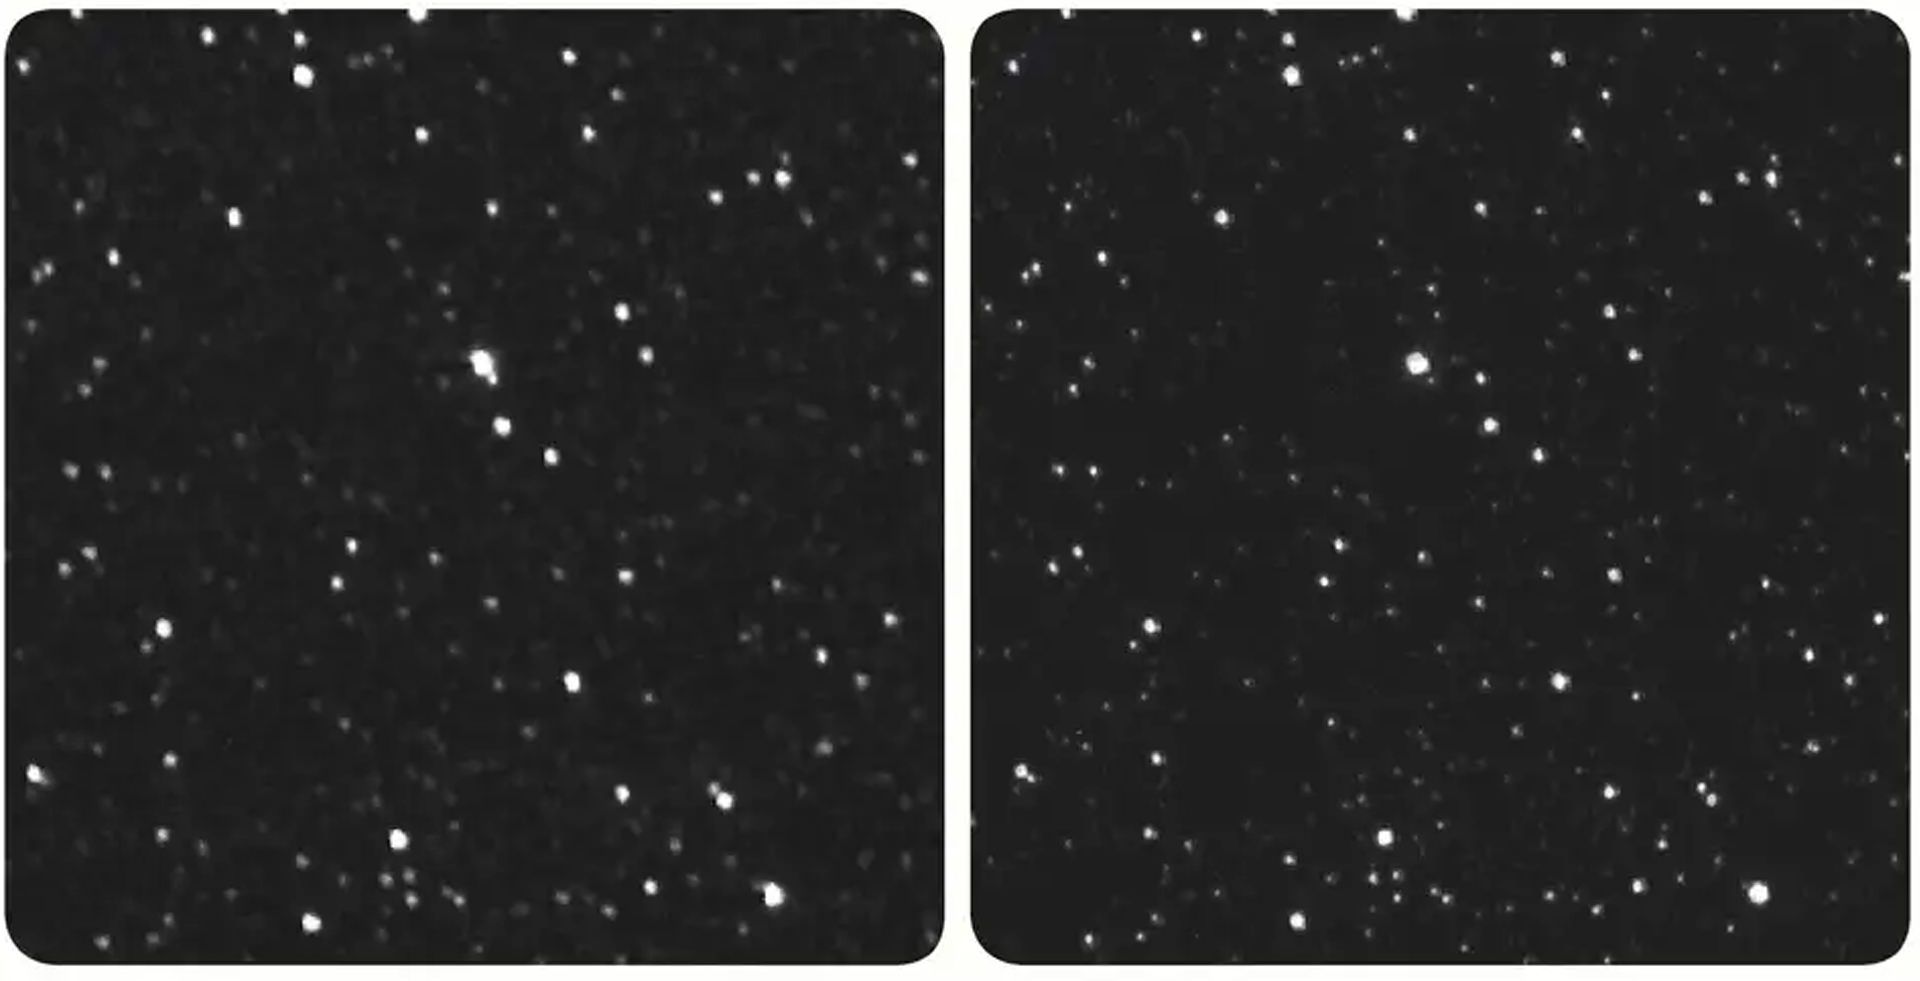 دو نمای متفاوت از پروکسیما قنطورس از زمین و فضاپیما نیو هورایزنز ناسا